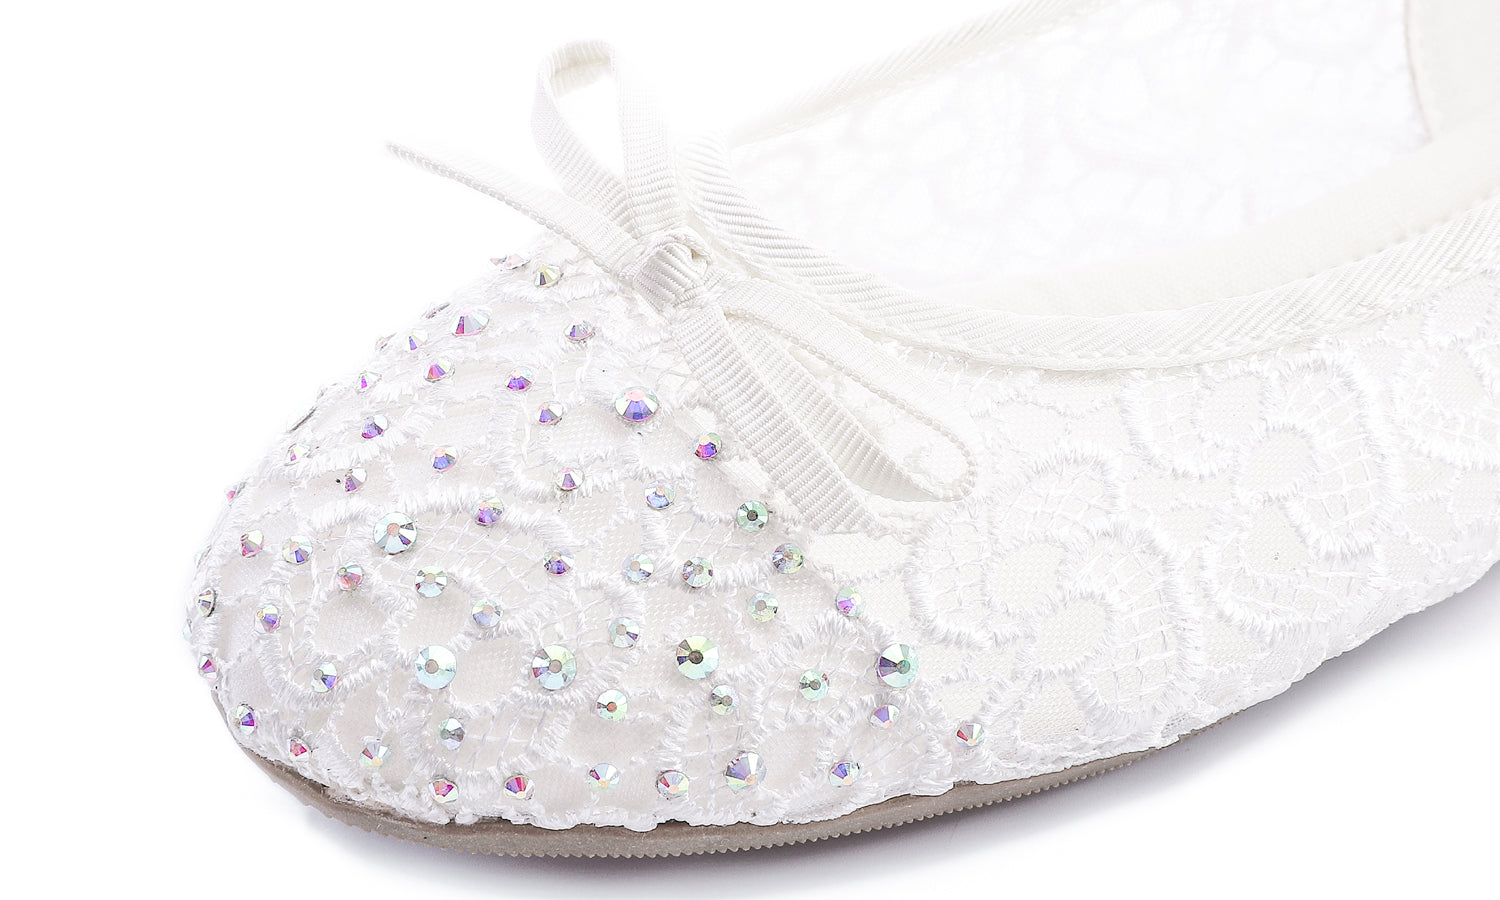 Feversole Round Toe Lace Ballet Crochet Flats White Sparkle Women's Comfy Breathable Shoes